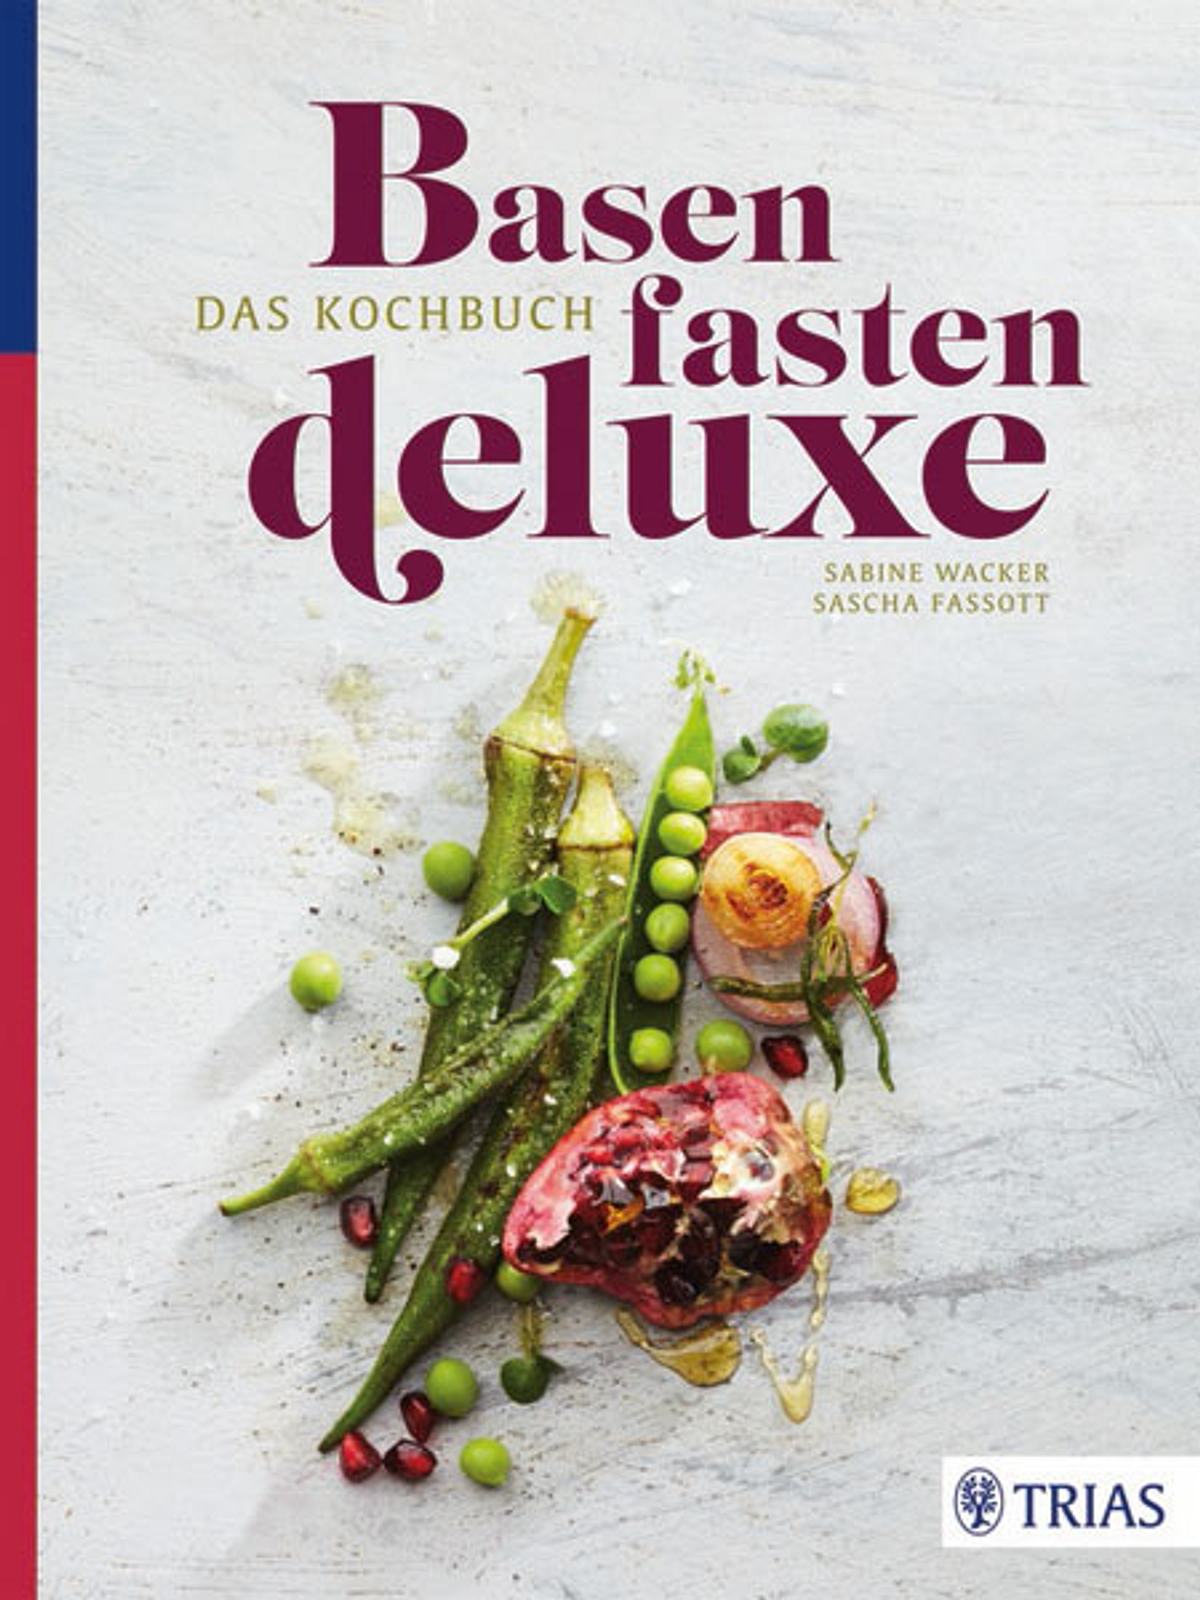 Buch-Tipp: Basenfasten deluxe nach Sabine Wacker - basenfasten_deluxe_h